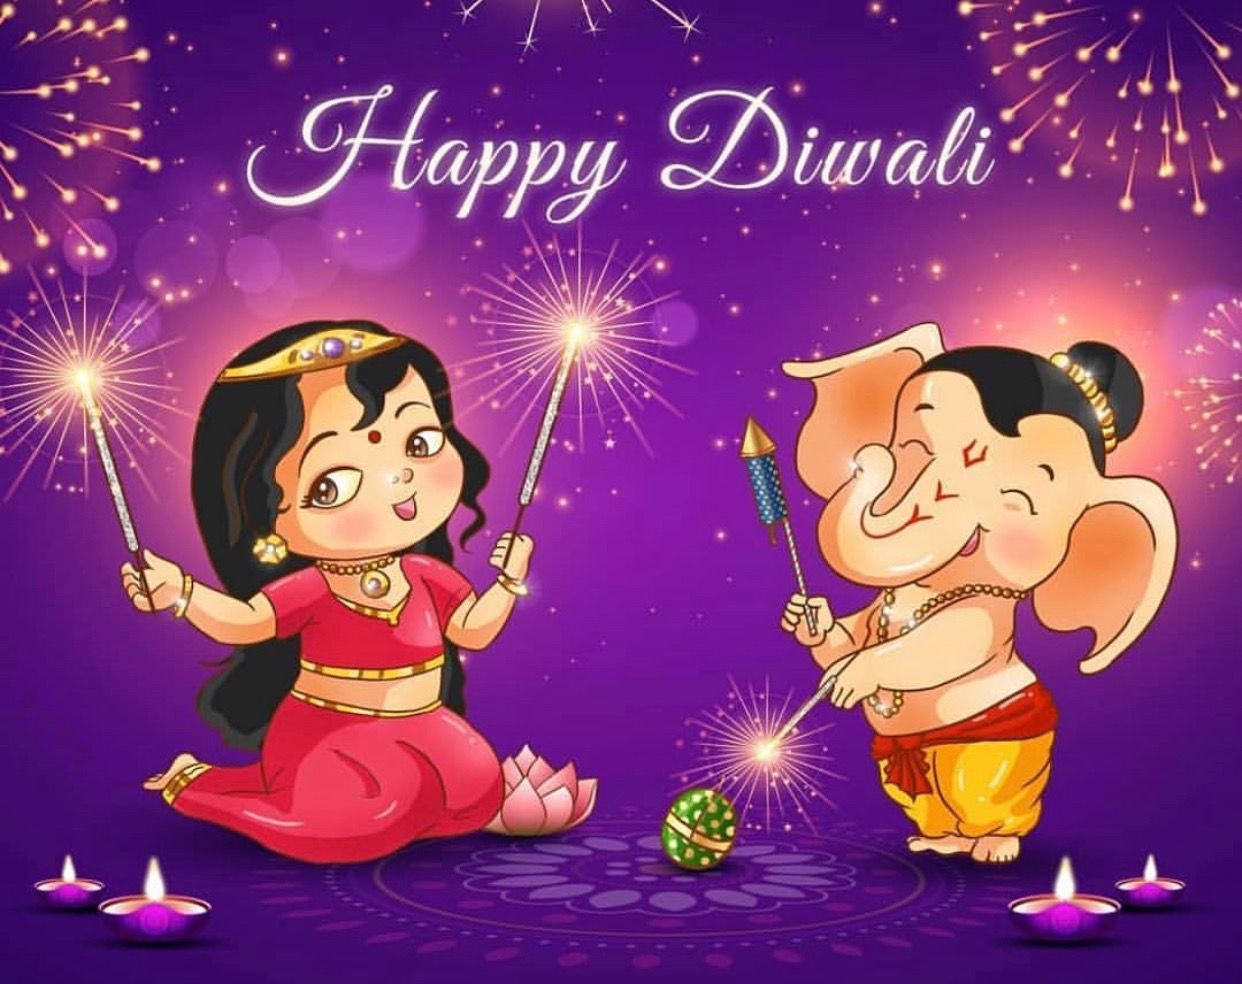 Happy Diwali From India Hearld